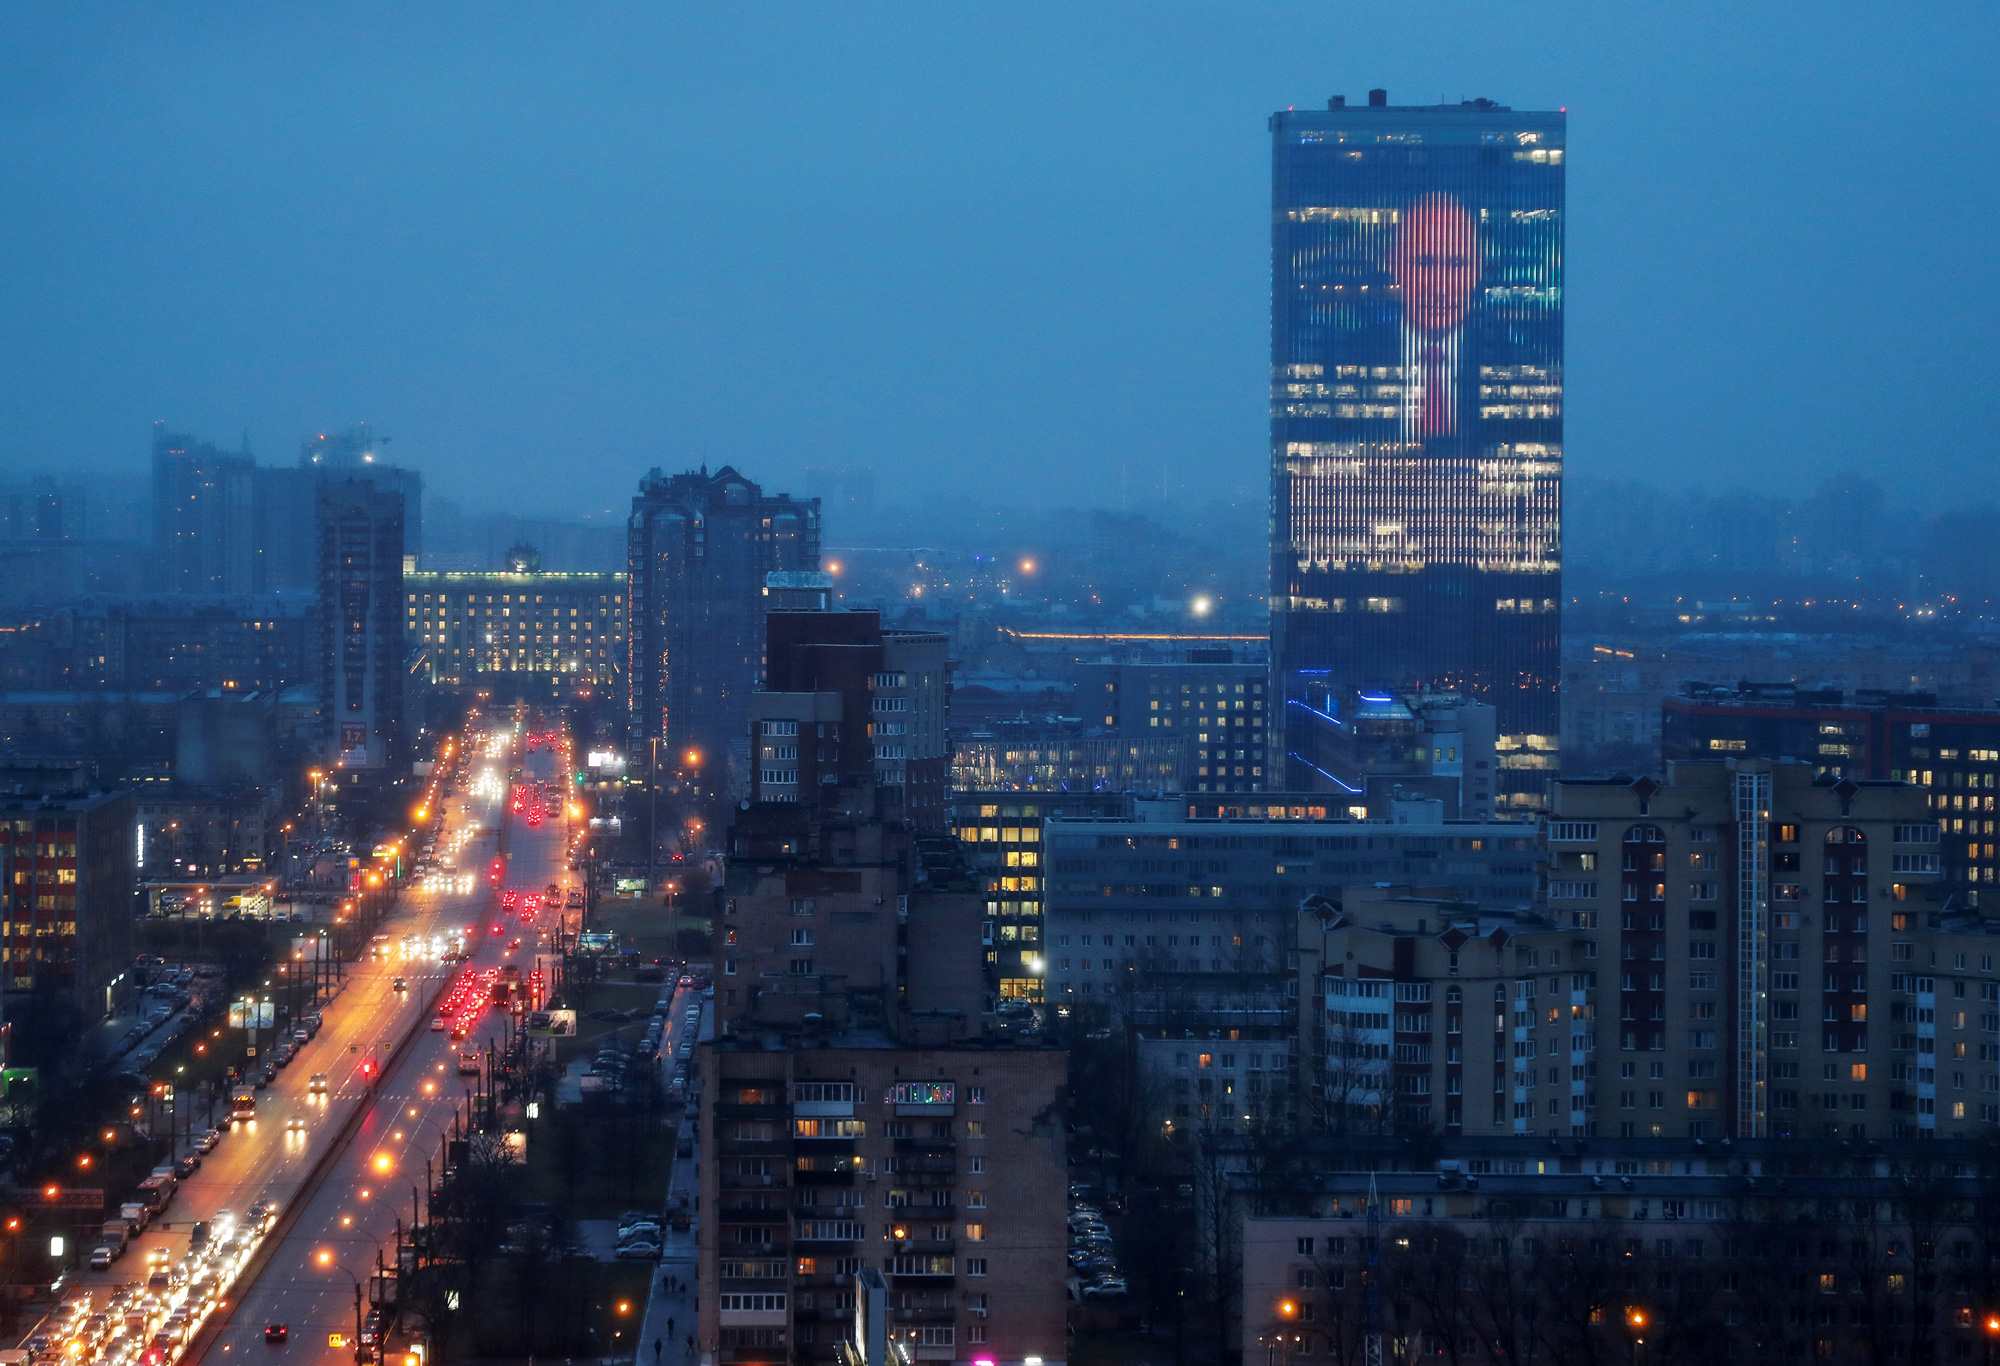 15 января: экран, установленный на фасаде бизнес-центра, показывает изображение президента России Владимира Путина и цитату из его ежегодного обращения к Федеральному Собранию.